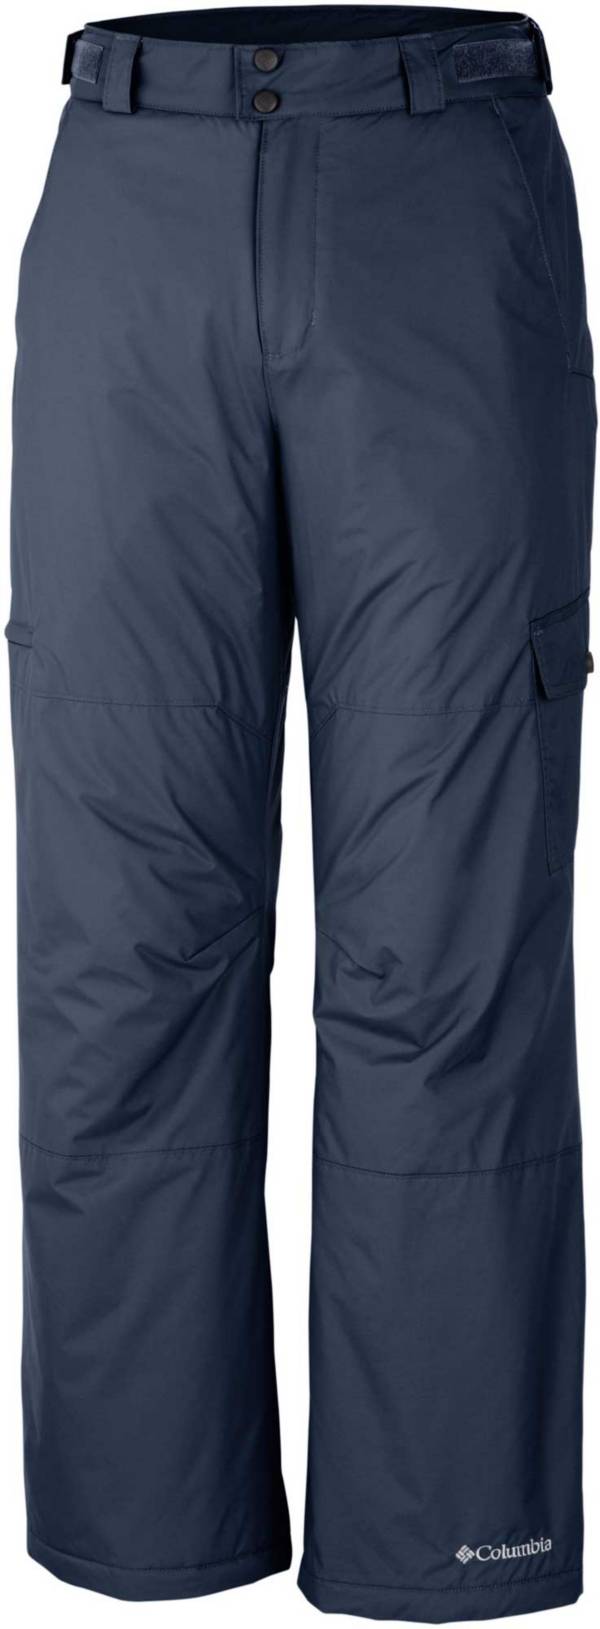 Columbia Men's Snow Gun Pants (Regular and Big & Tall) product image